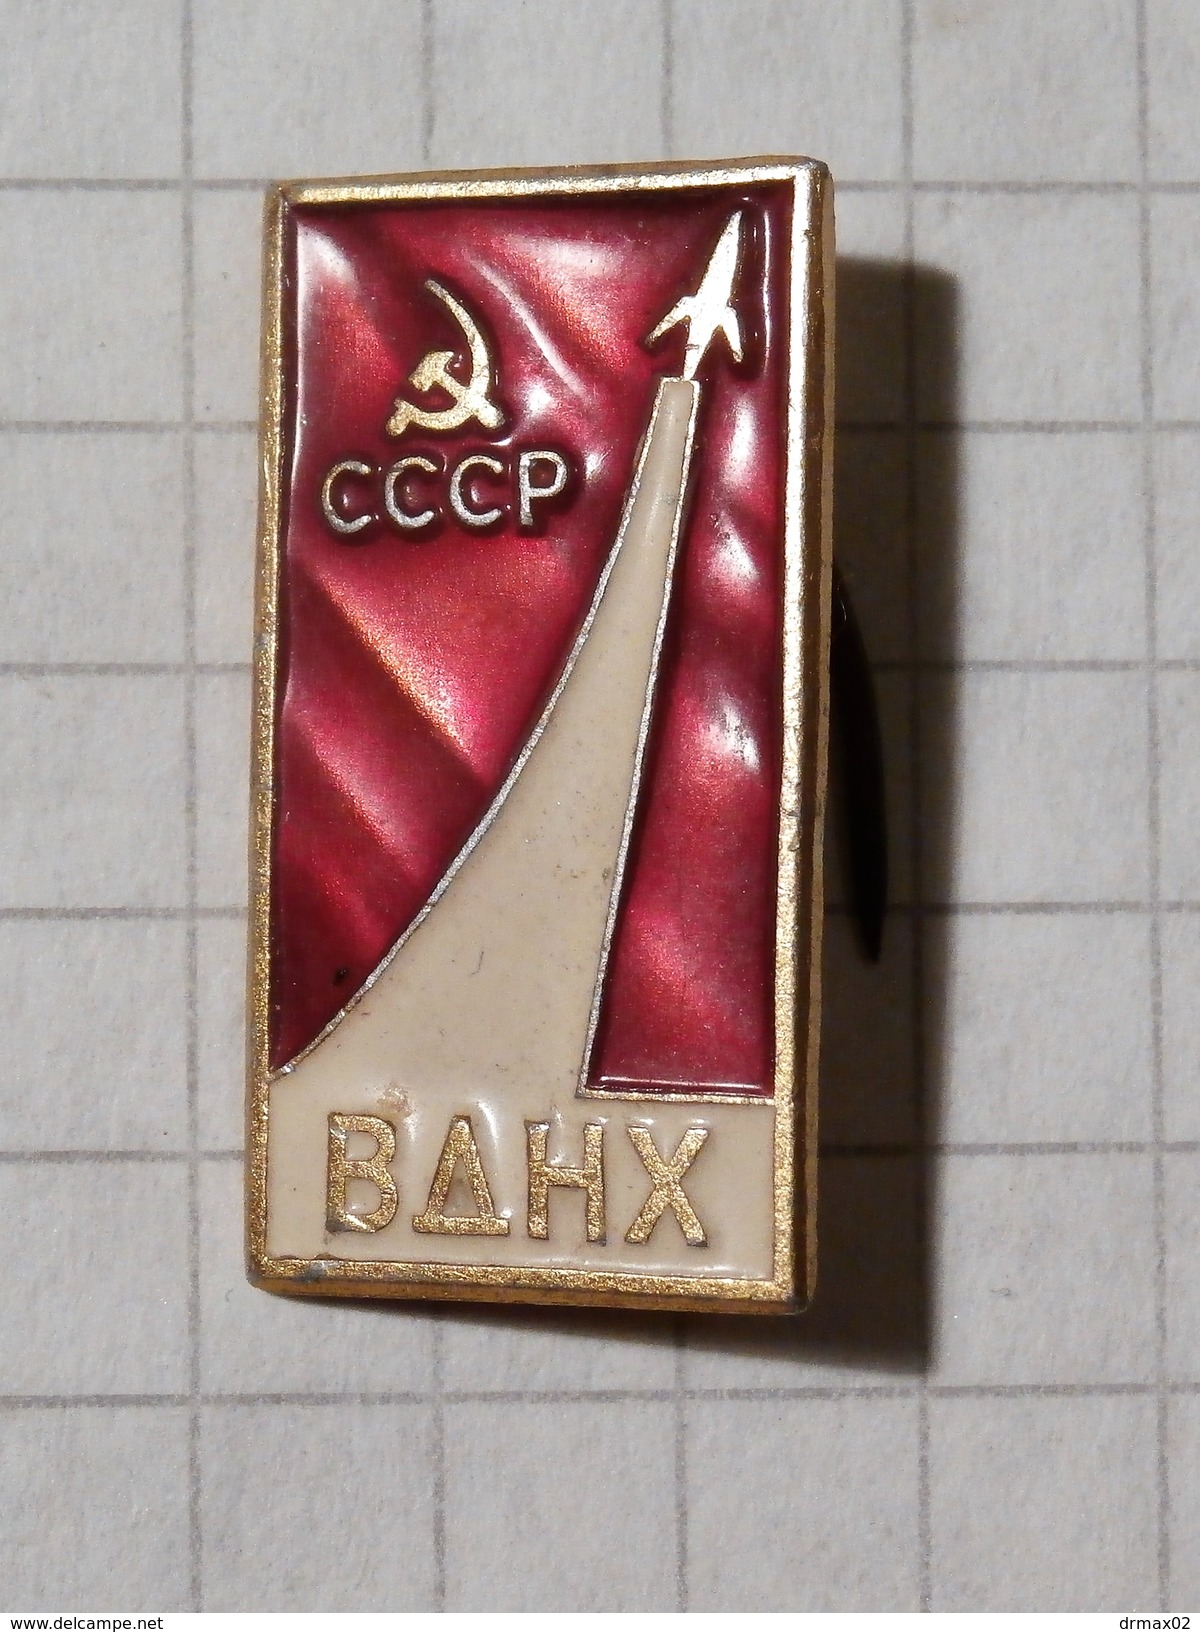 ROCKET VDNH SOVIET RUSSIAN SPACE / USSR - Ruimtevaart